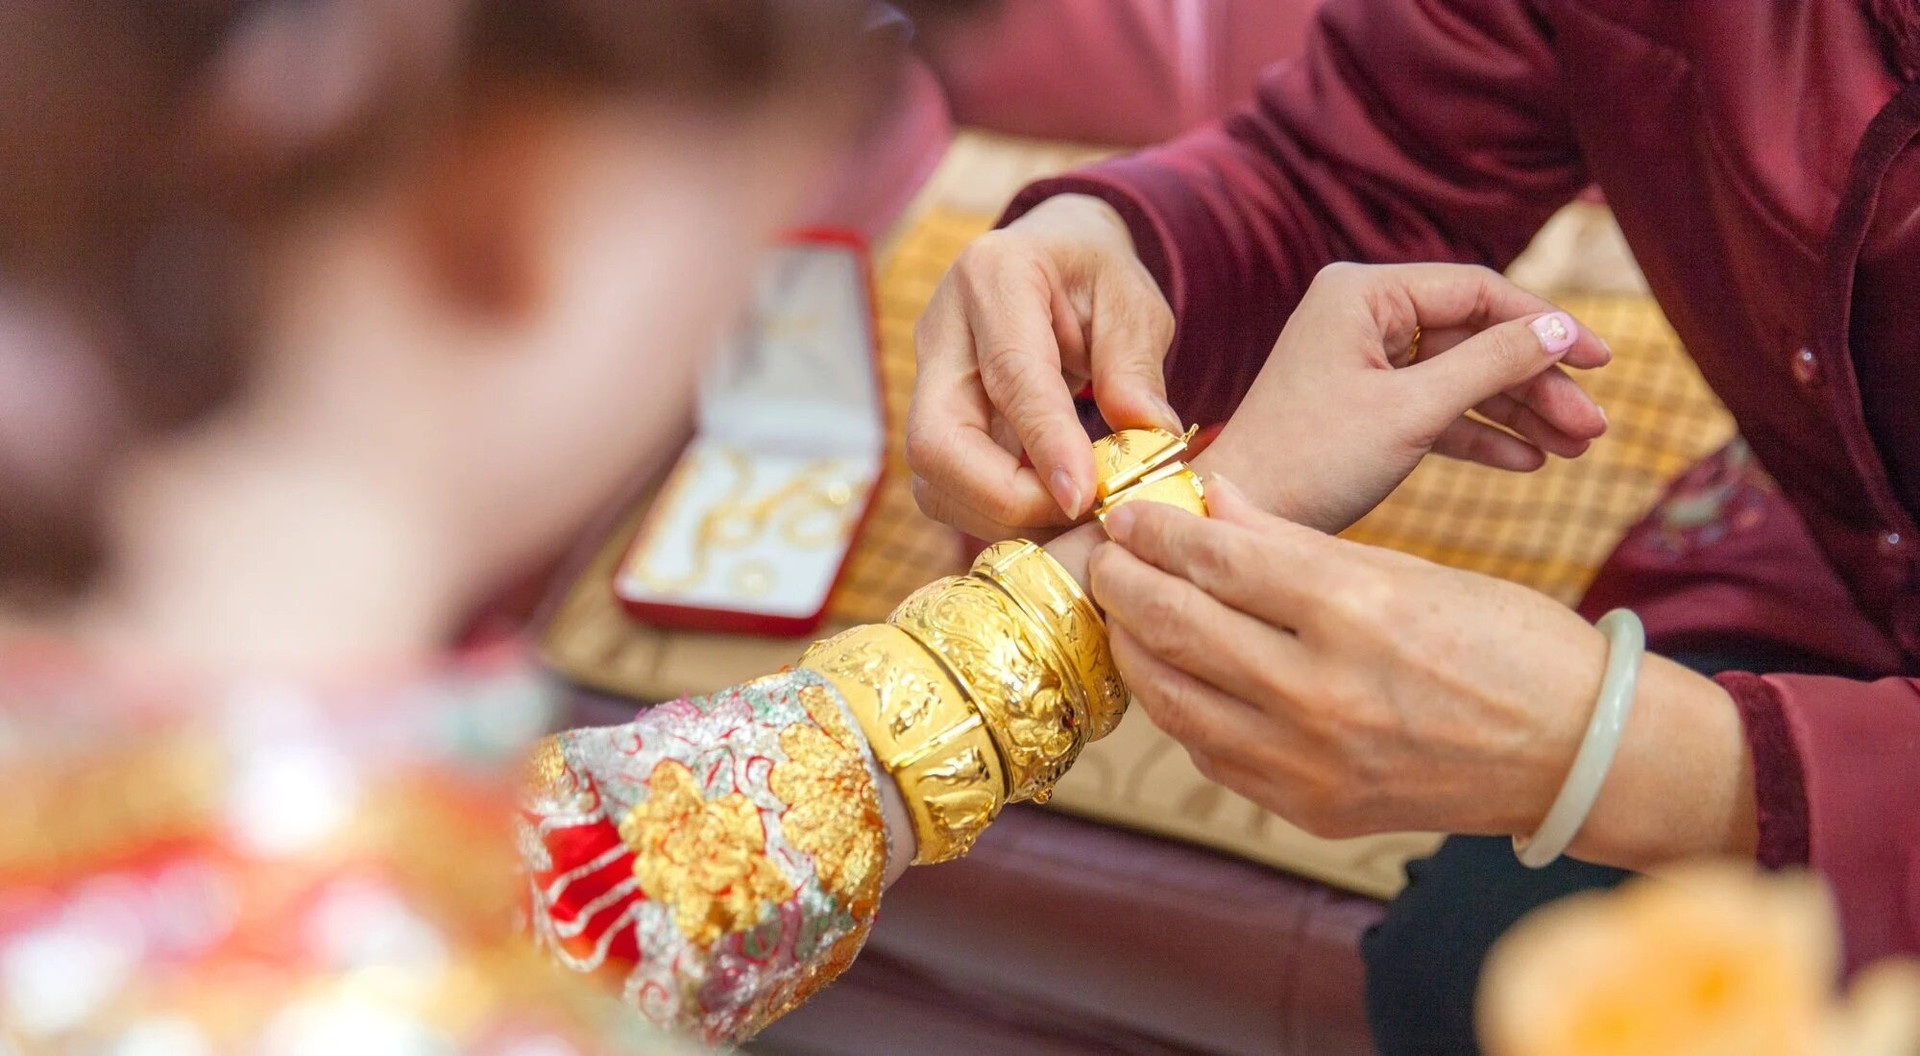 TIền thách cưới ở Trung Quốc có thể bao gồm tiền, đồ trang sức và nhiều loại vật phẩm có giá trị khác. (Ảnh: Shutterstock)